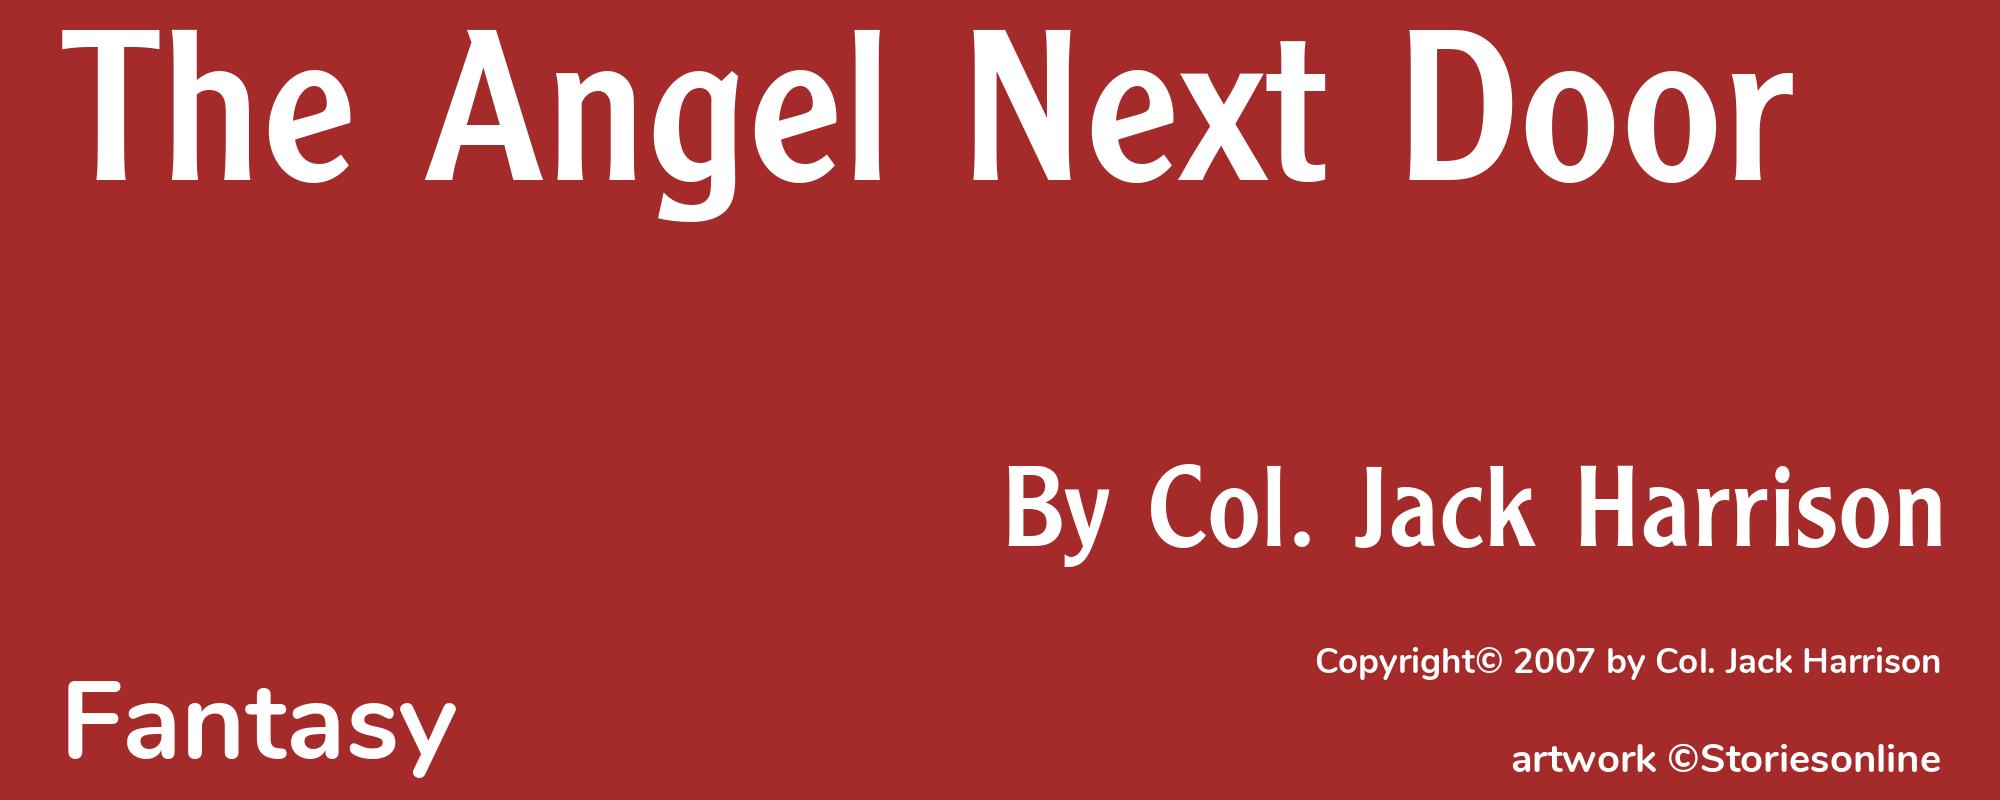 The Angel Next Door - Cover